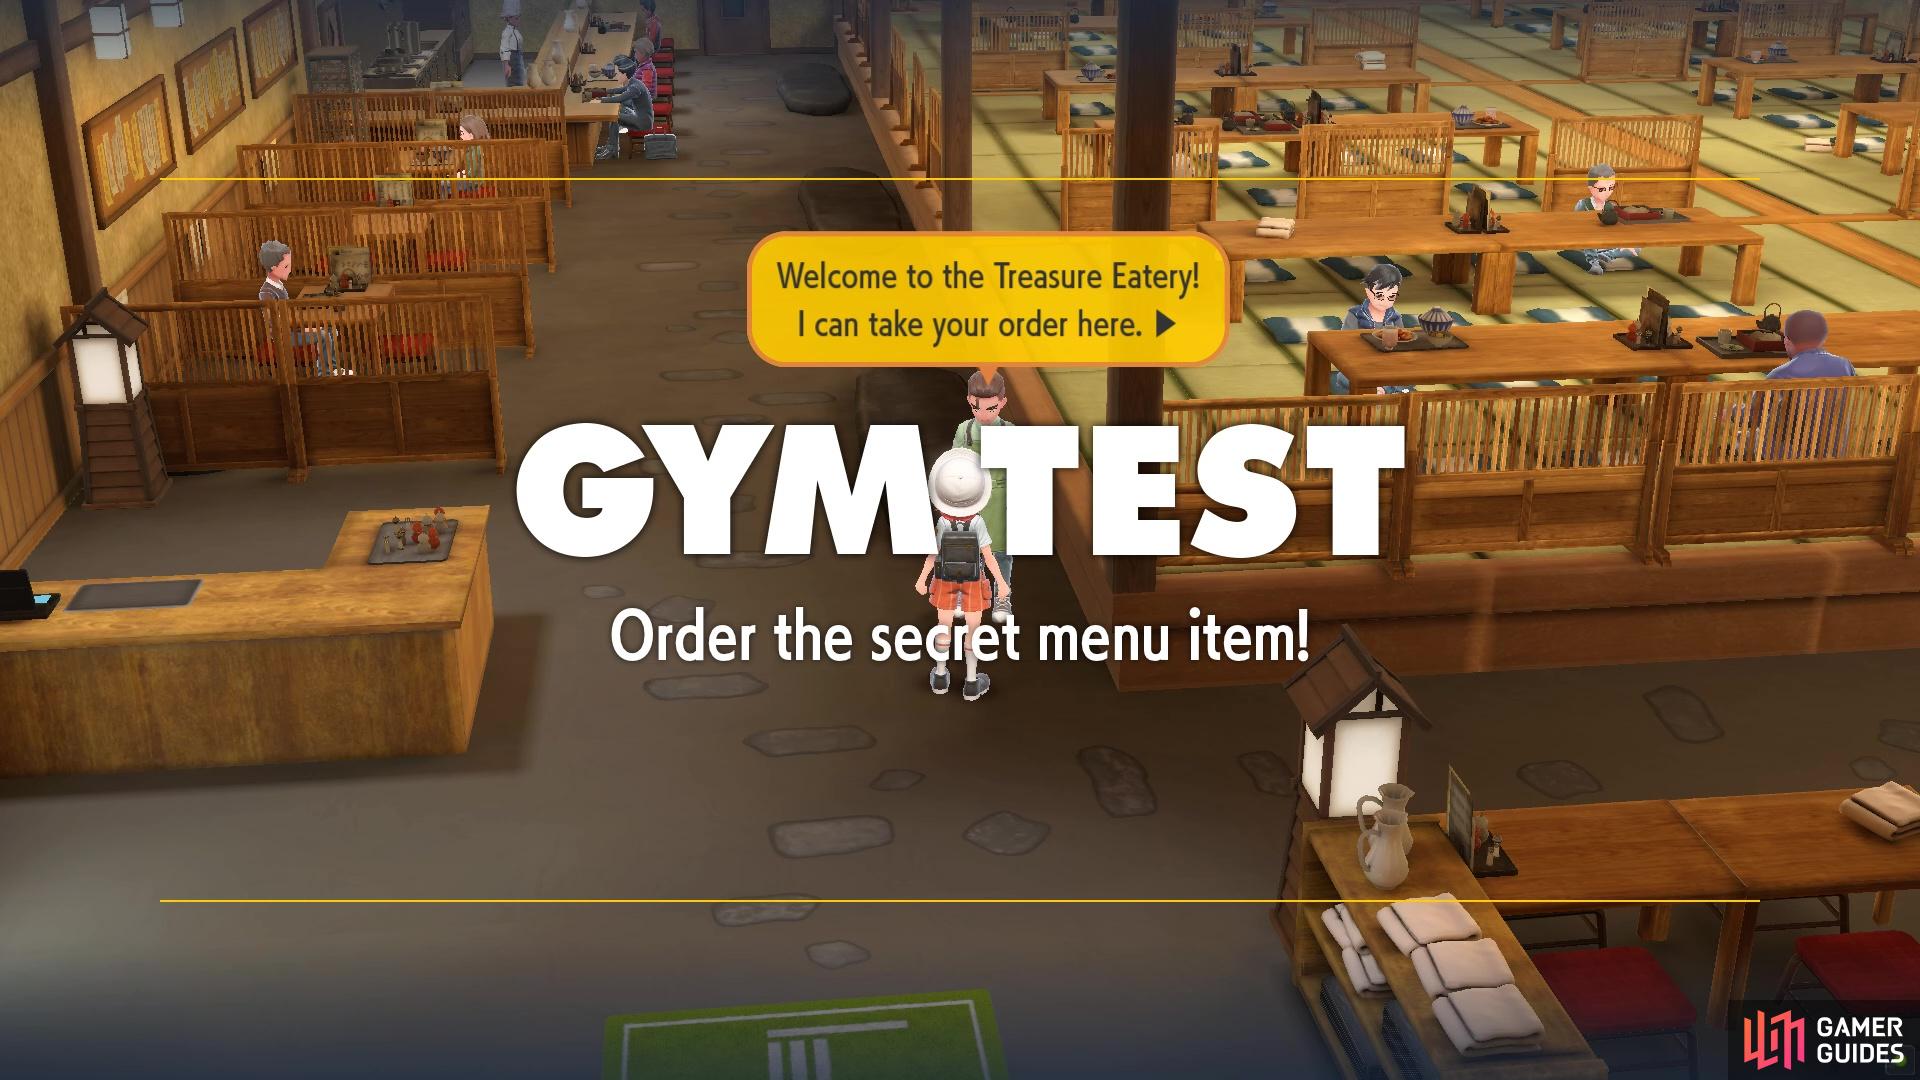 Gym Test: Order the secret menu item!